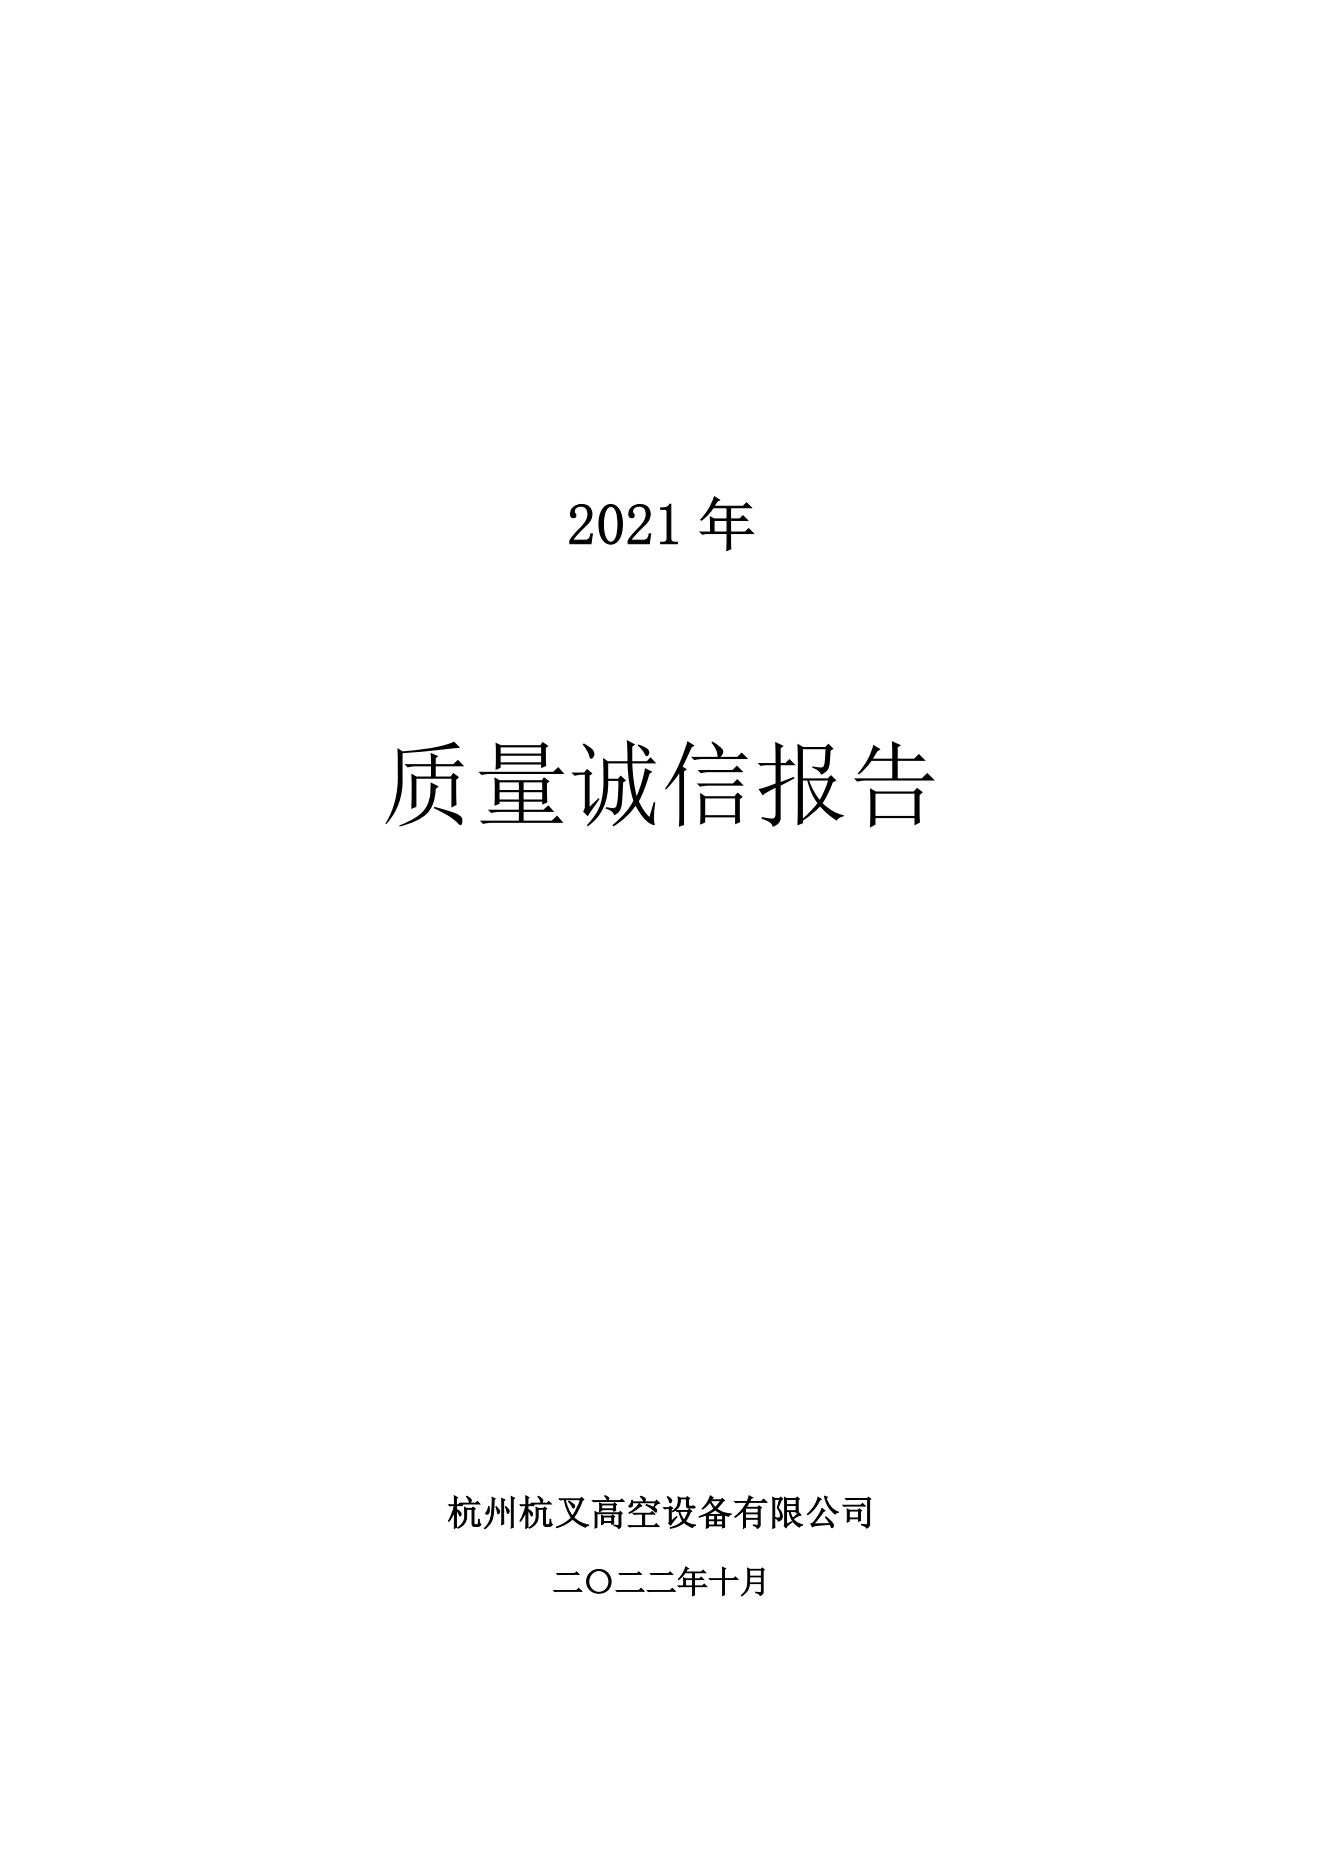 杭州杭叉高空設備公司2021年質量誠信報告(圖1)